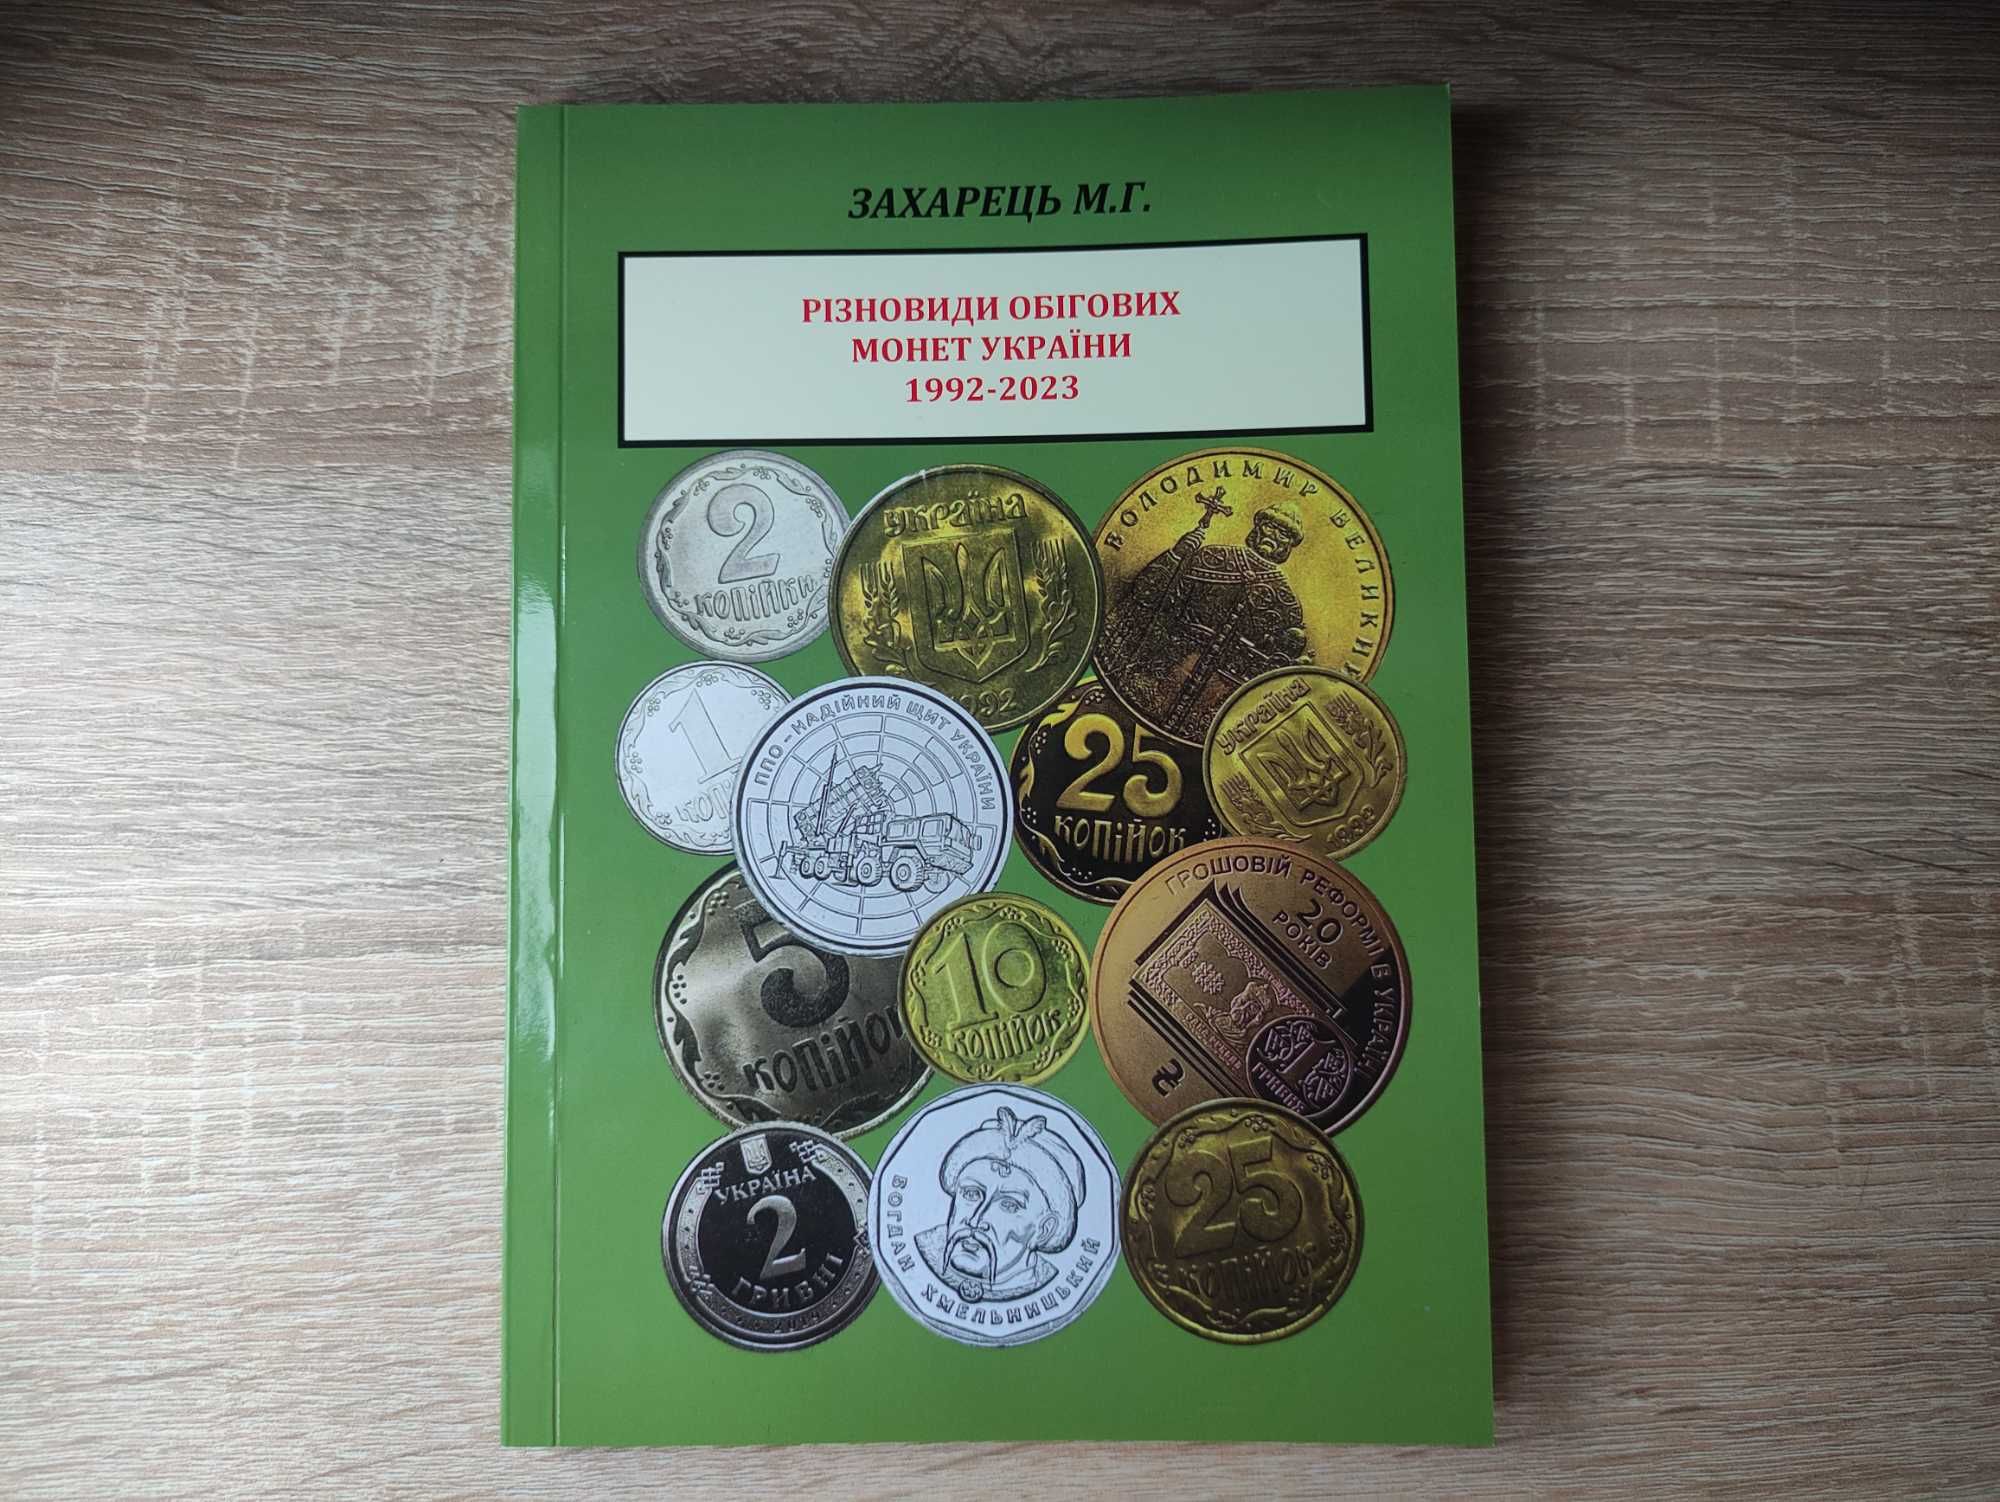 Каталог "Різновиди обігових монет України 1992-2023", М.Г.Захарець